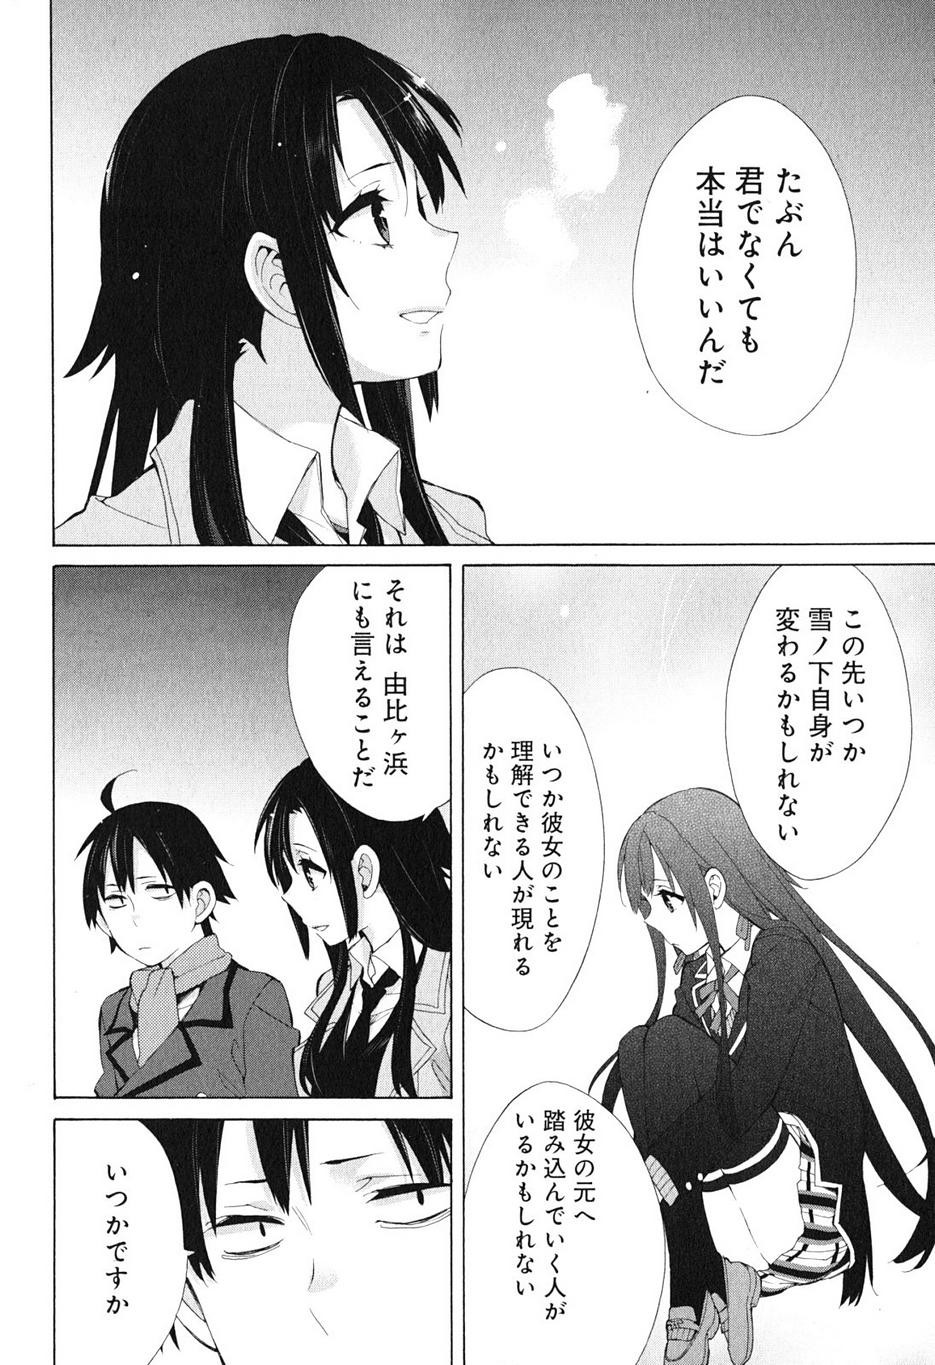 Yahari Ore no Seishun Rabukome wa Machigatte Iru. - Monologue - Chapter 39 - Page 22